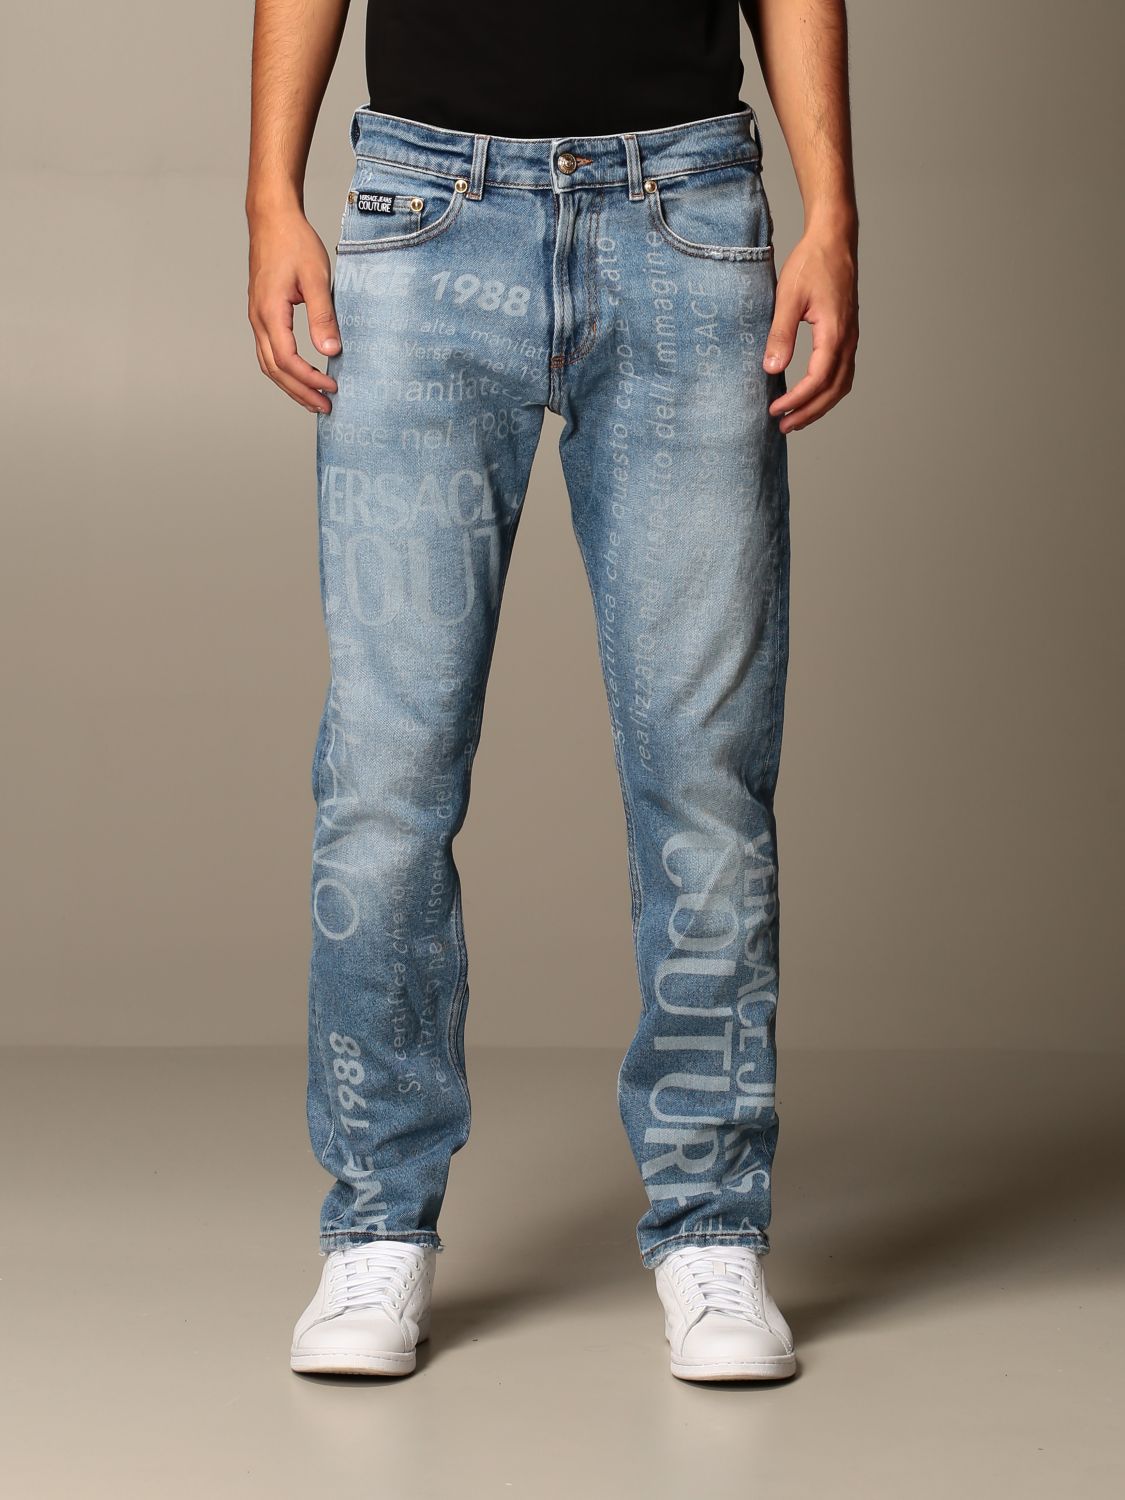 Versace jeans мужские